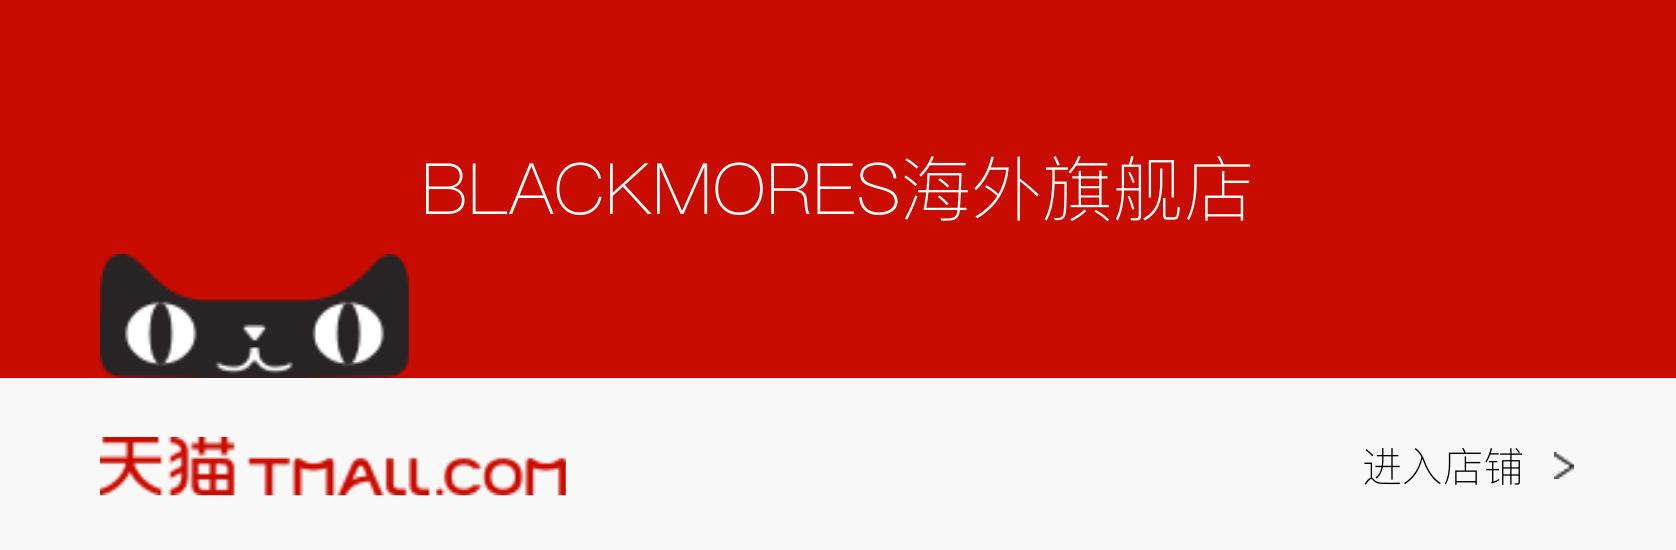 blackmores_tianmao